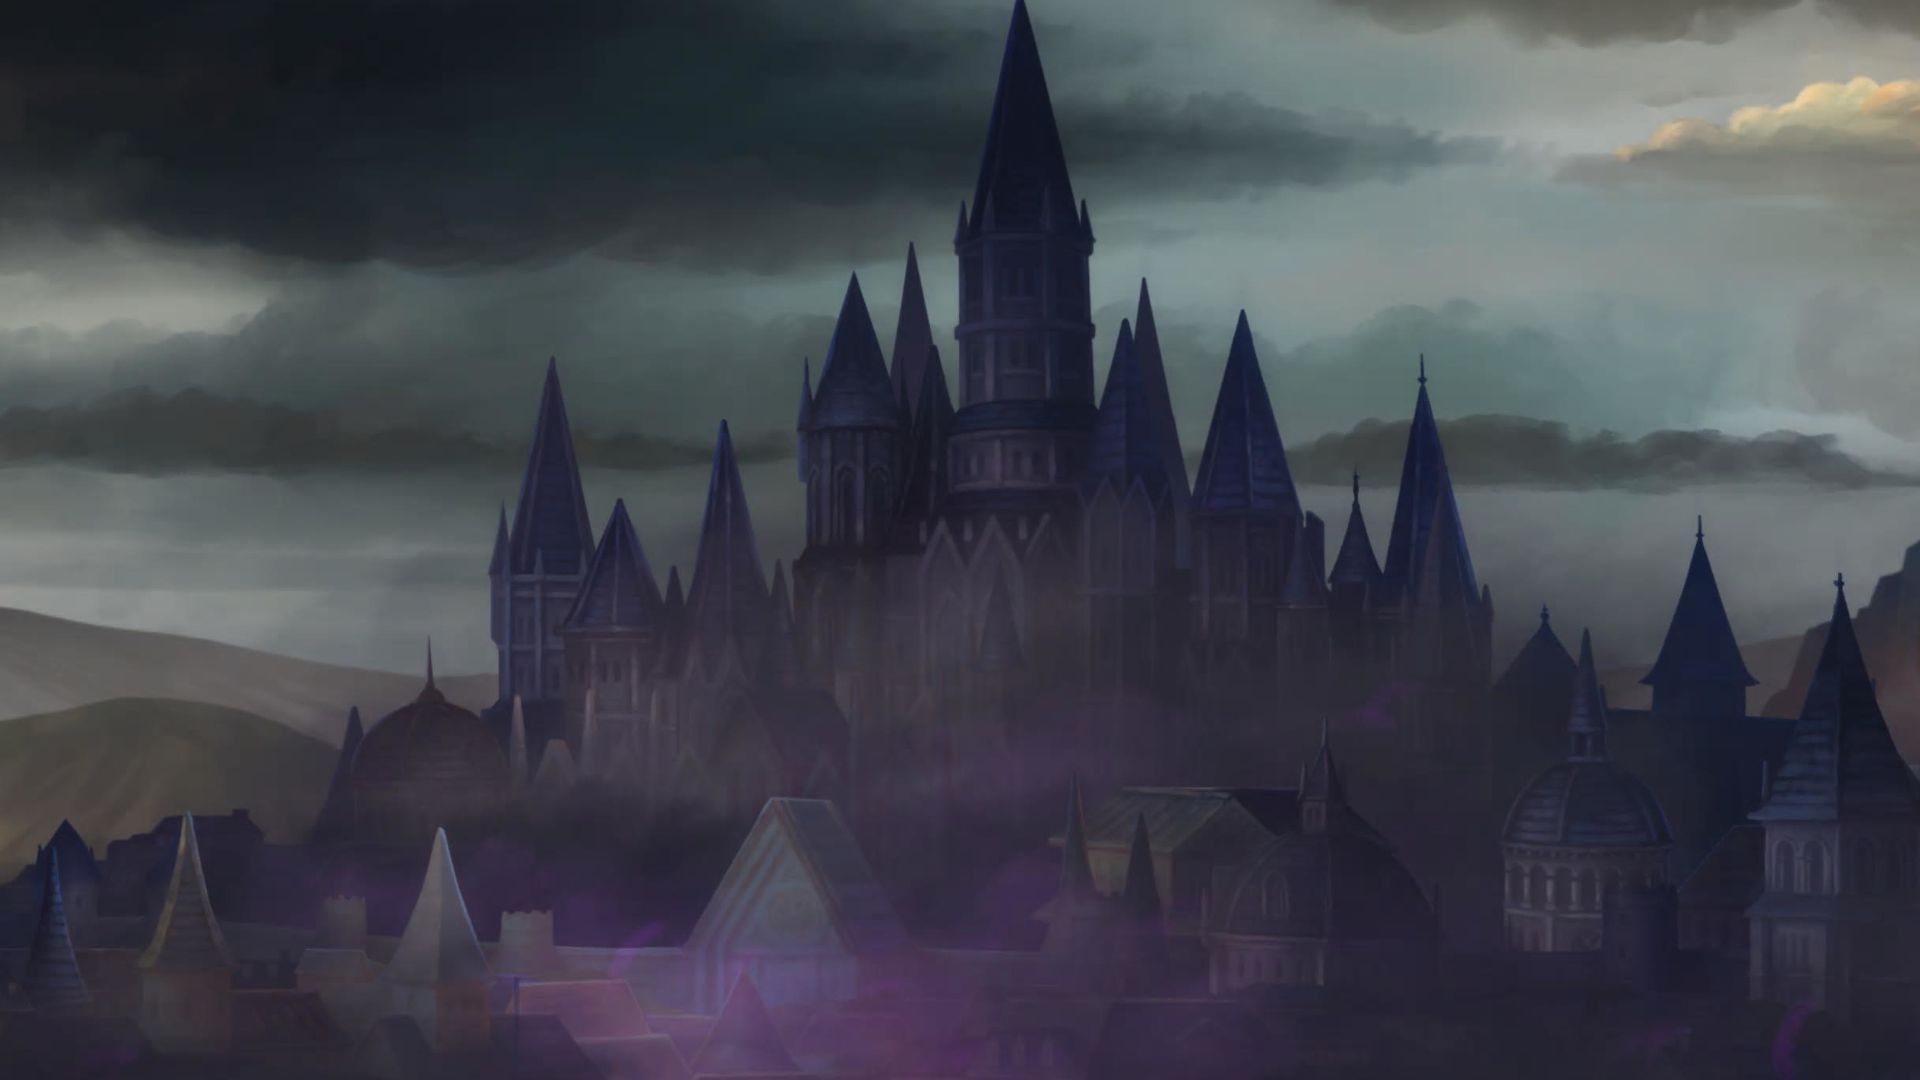 Unicorn Overlord, Capital de Cornia cubierta por una niebla púrpura